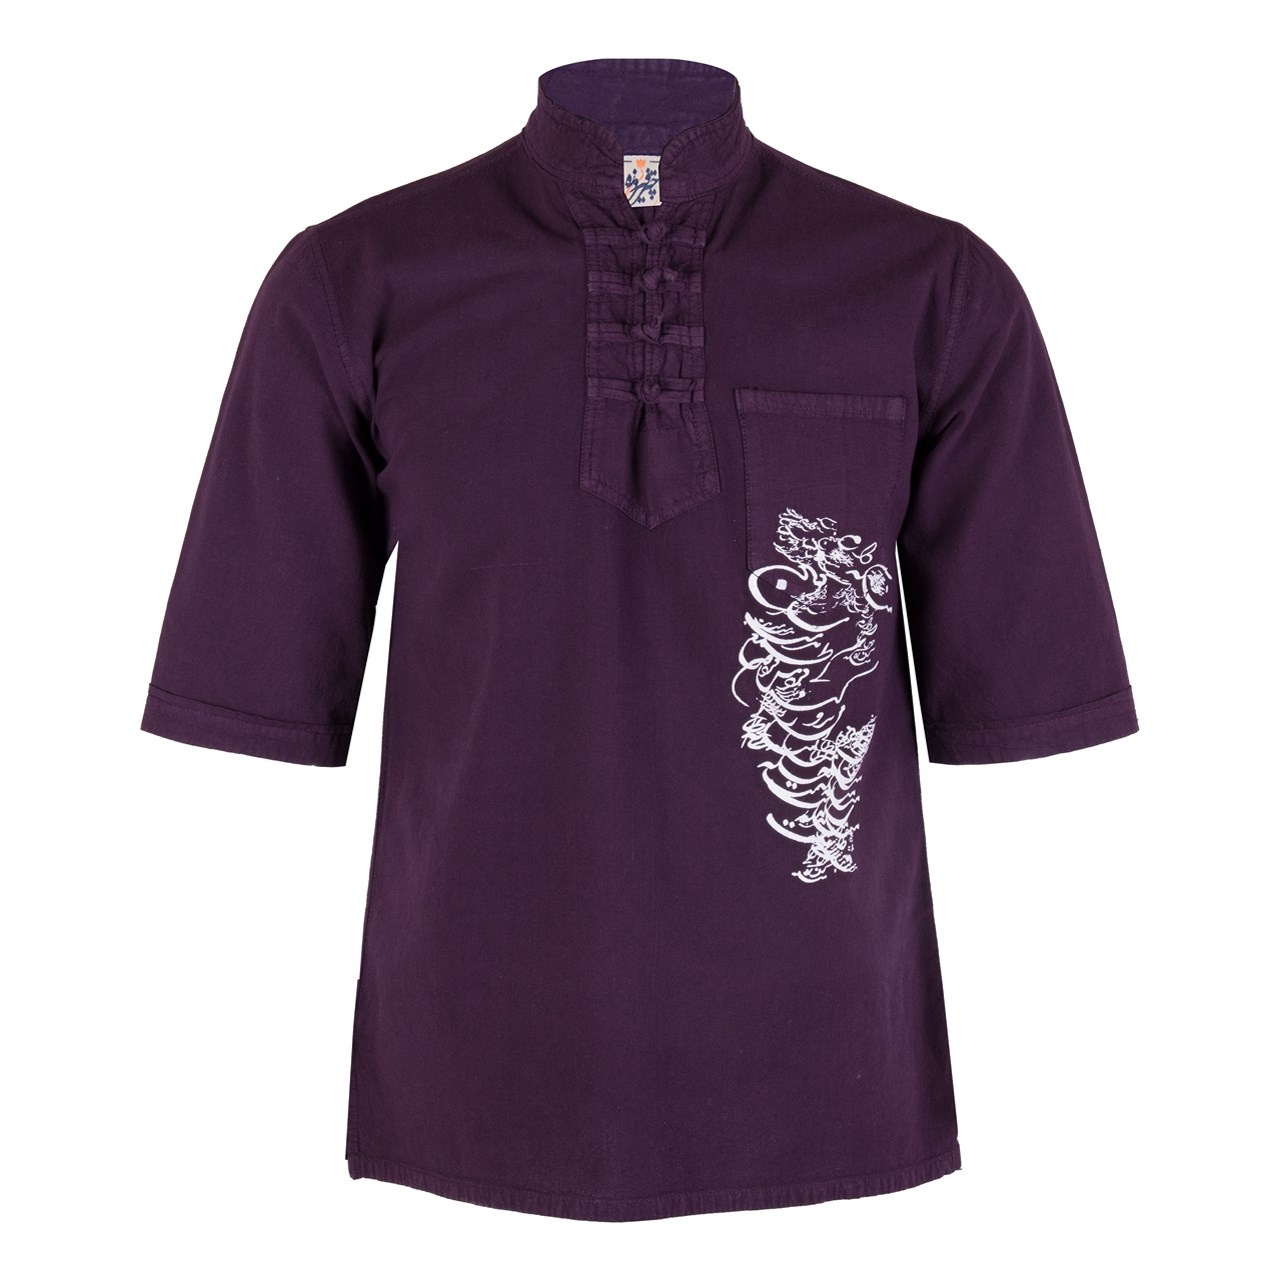 پیراهن مردانه الیاف طبیعی چترفیروزه مدل آستین کوتاه چاپی چهارگره زرشکی کد 4